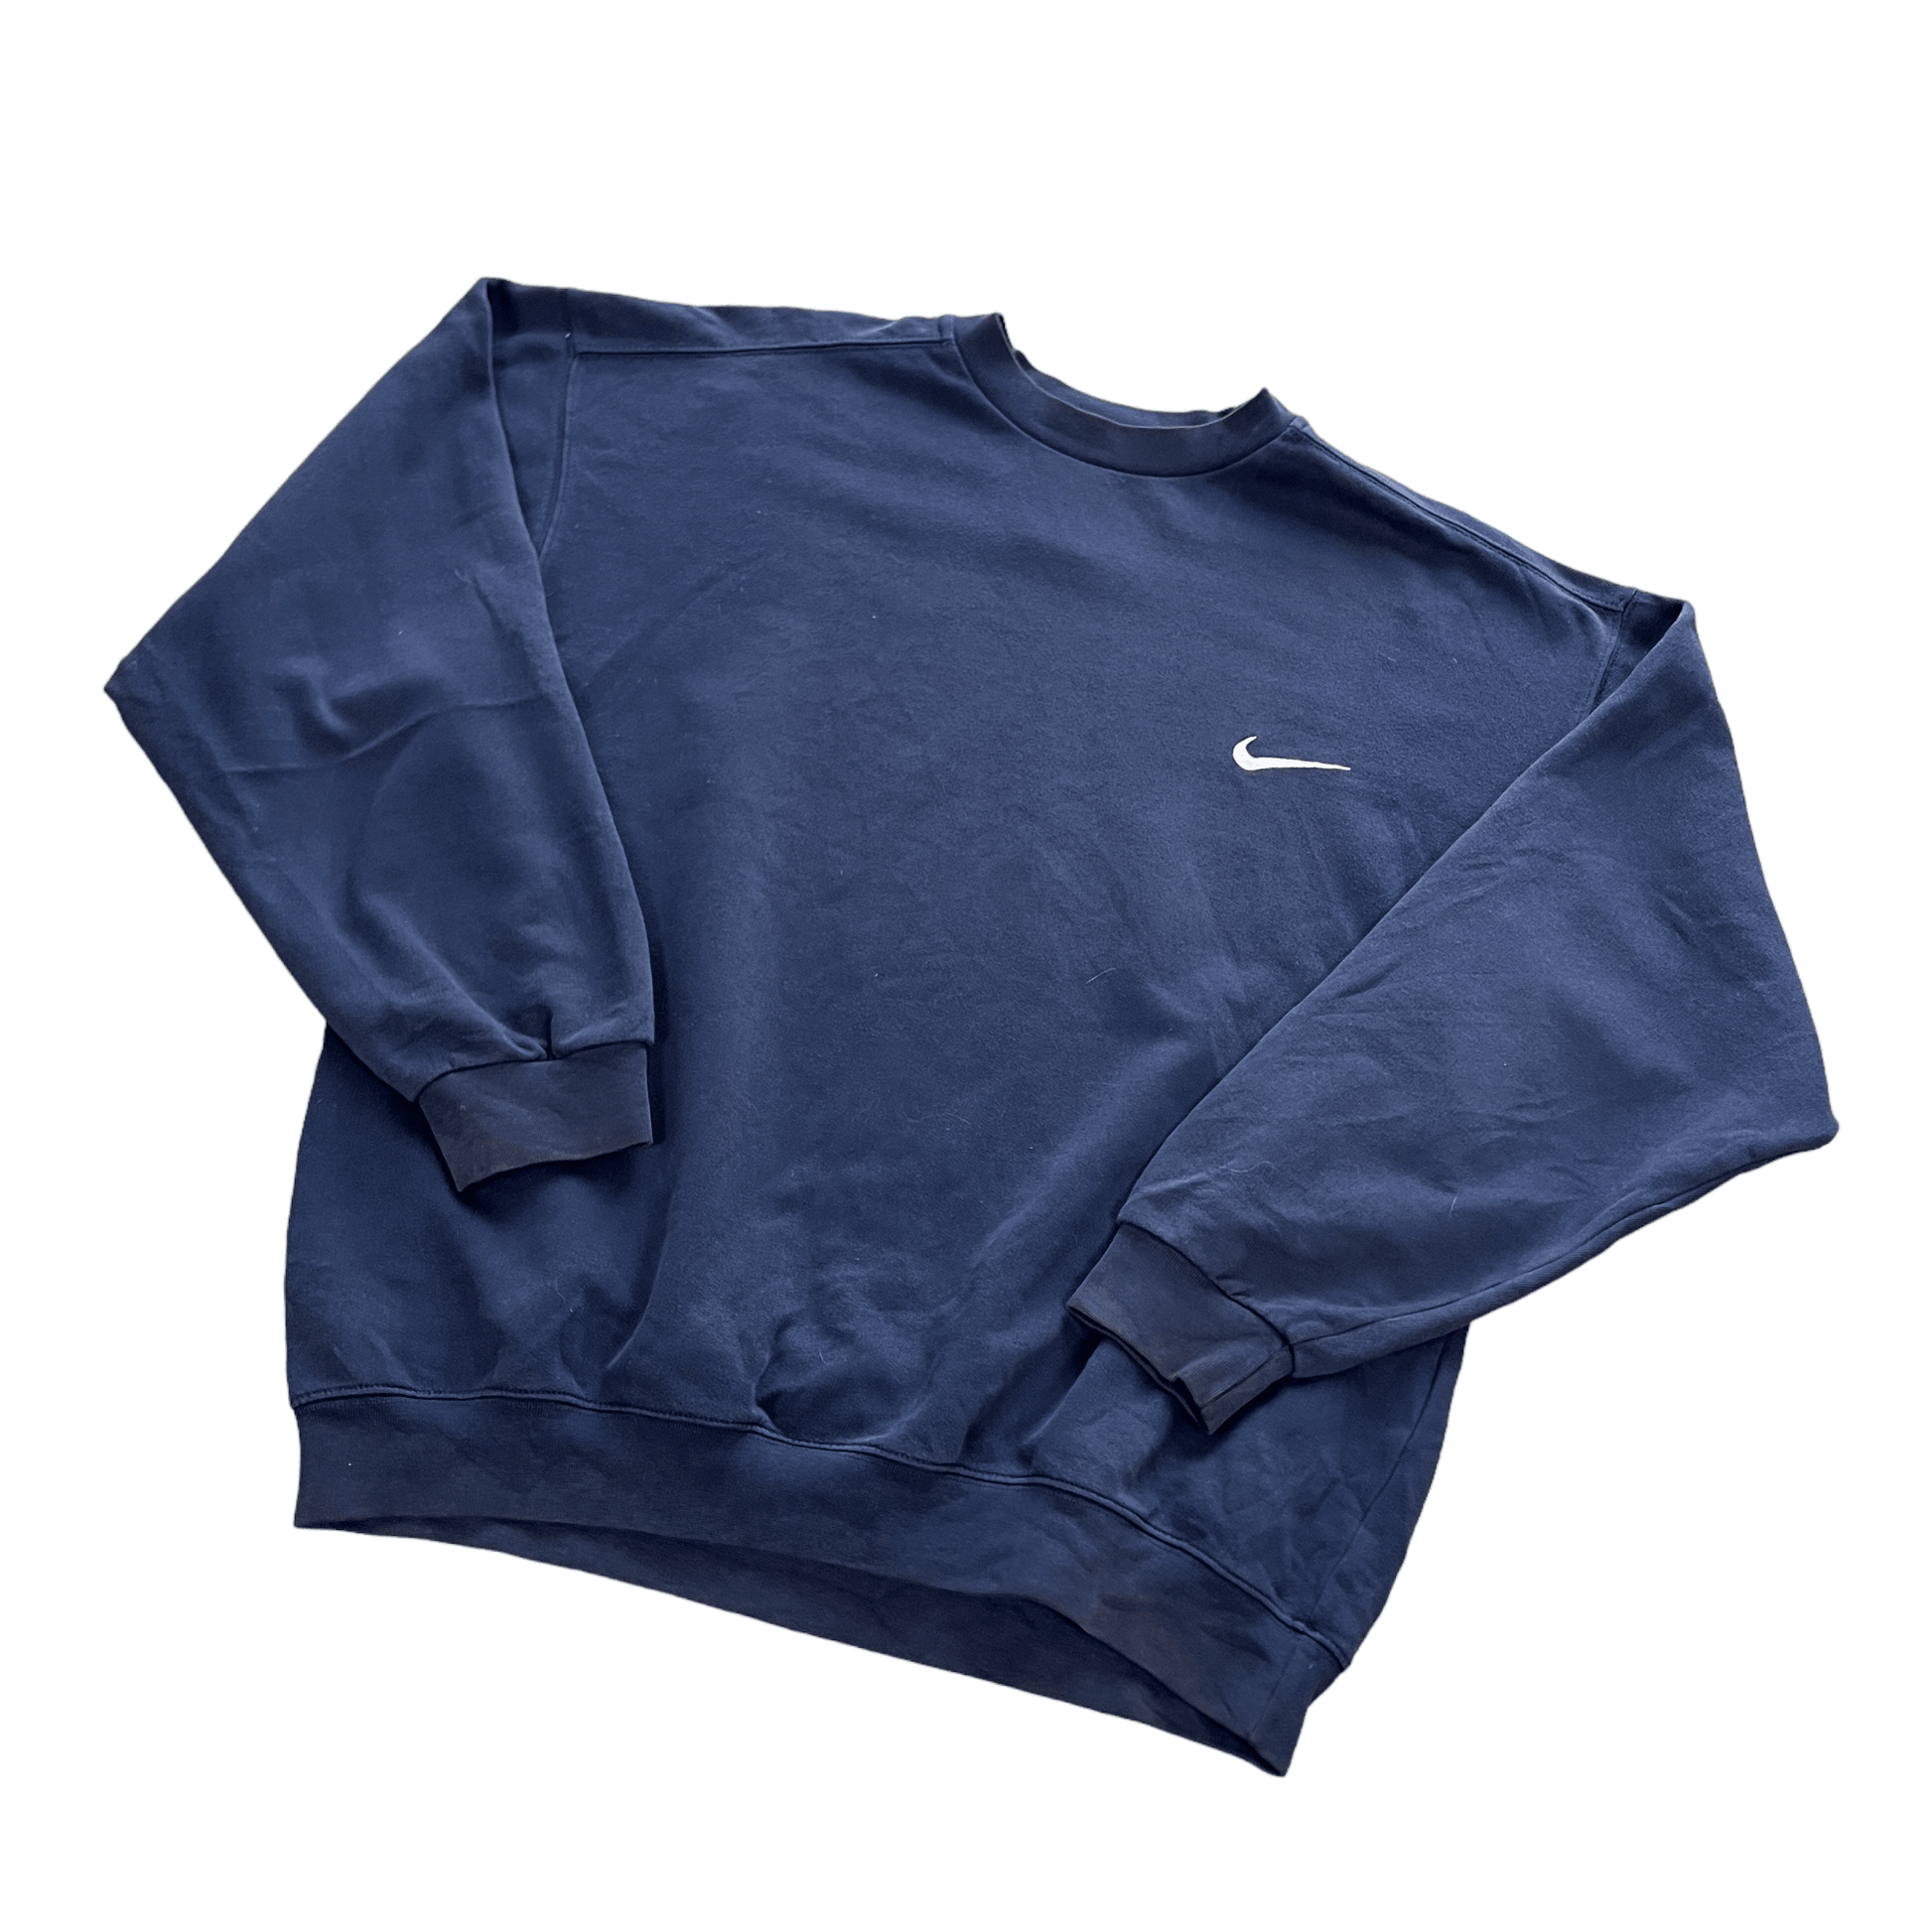 Vintage 90s Navy Blue Nike Sweatshirt - Large - The Streetwear Studio